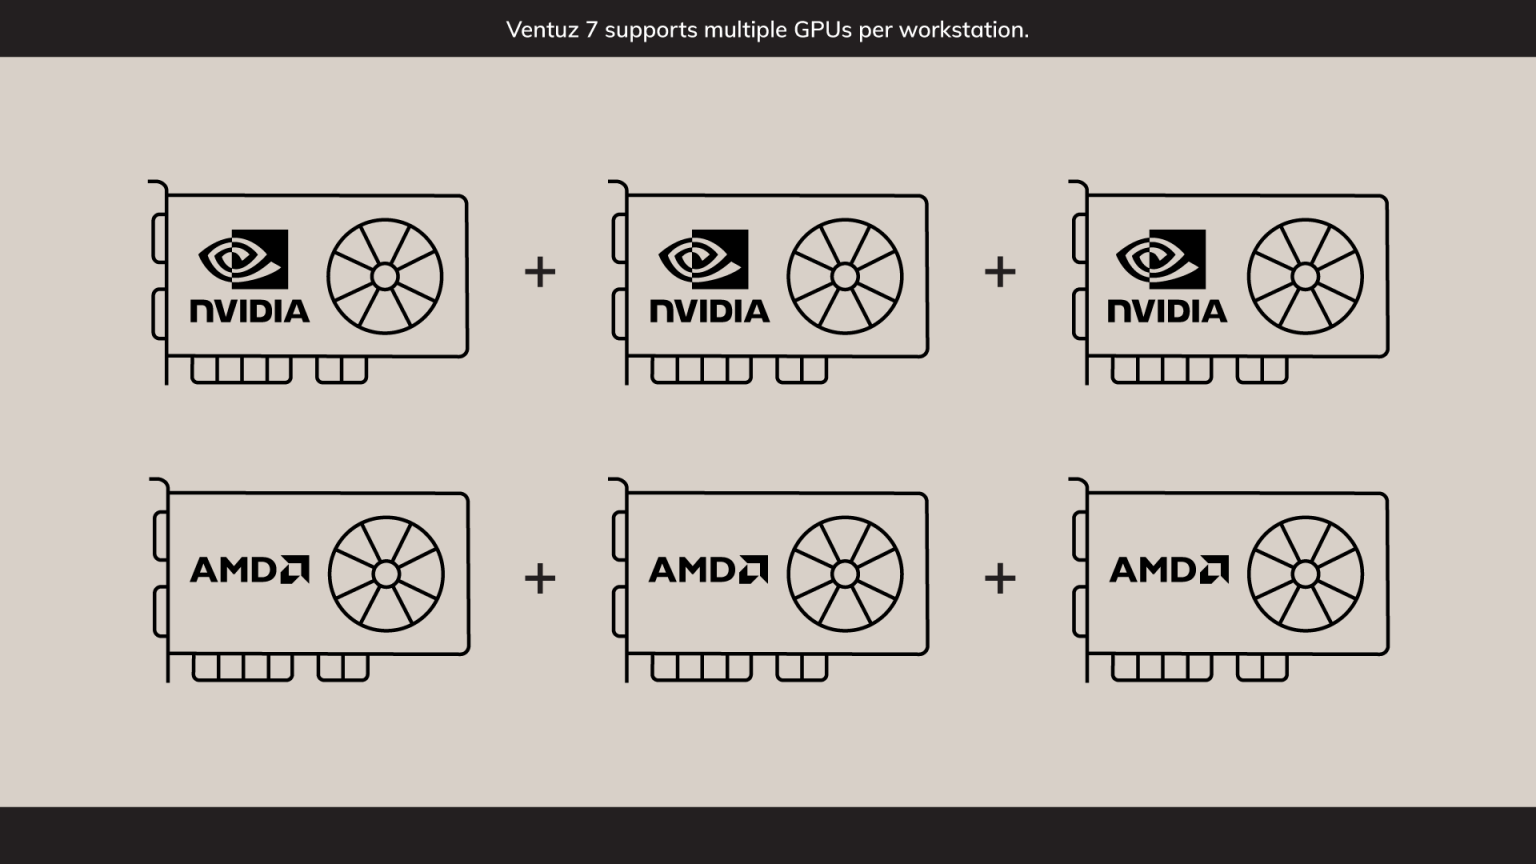 GPU_support_ventuz-7-1536x864